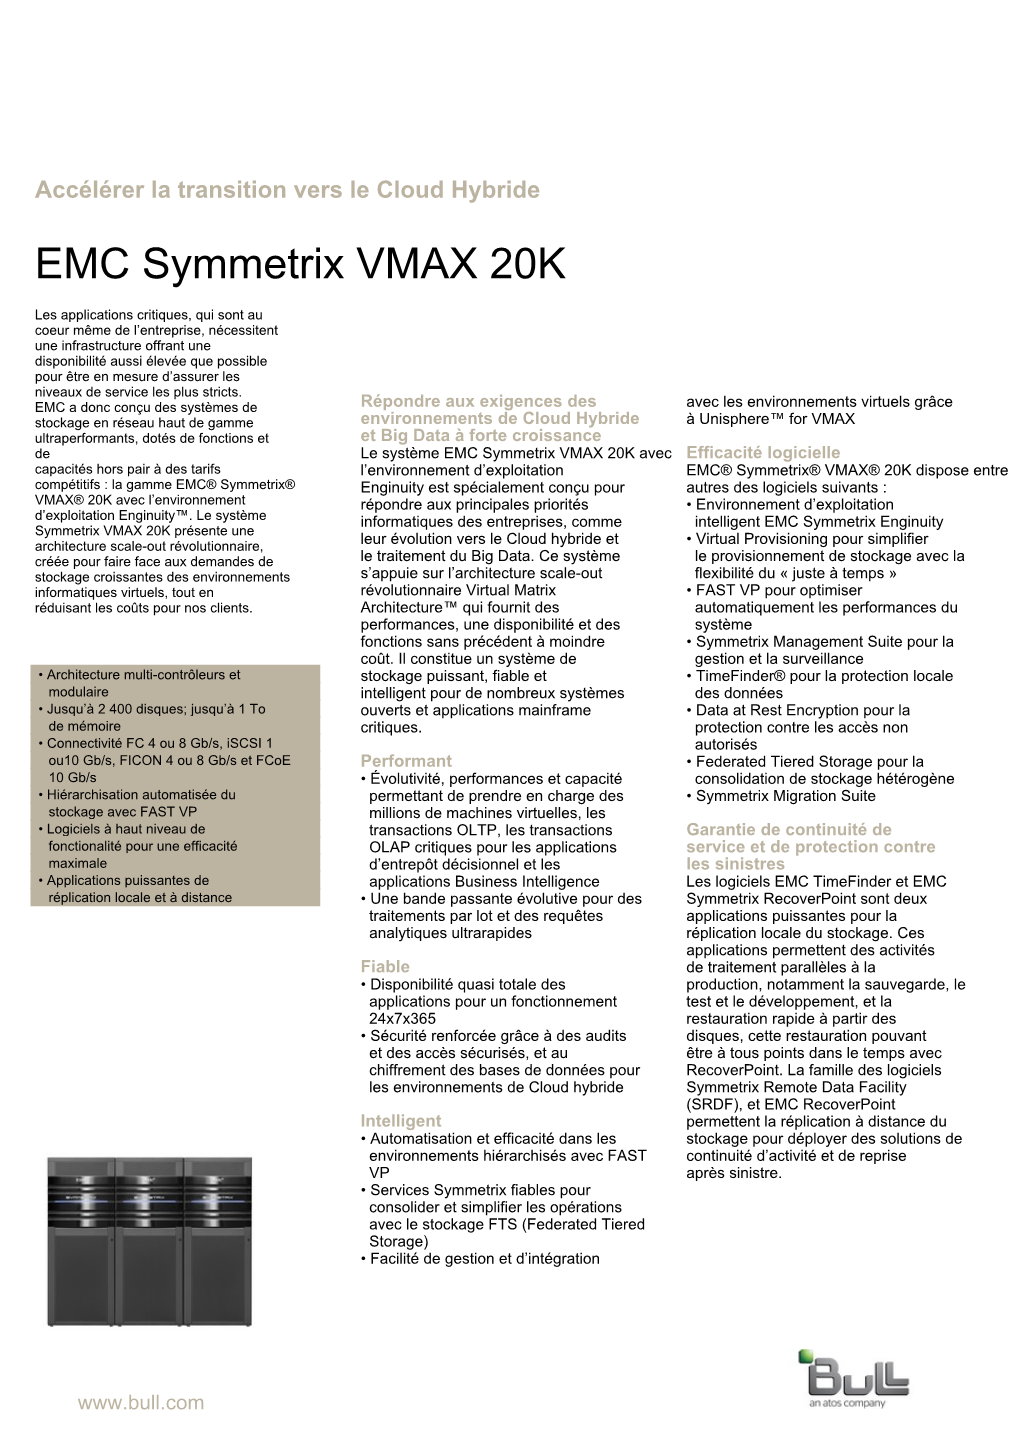 EMC Symmetrix VMAX 20K